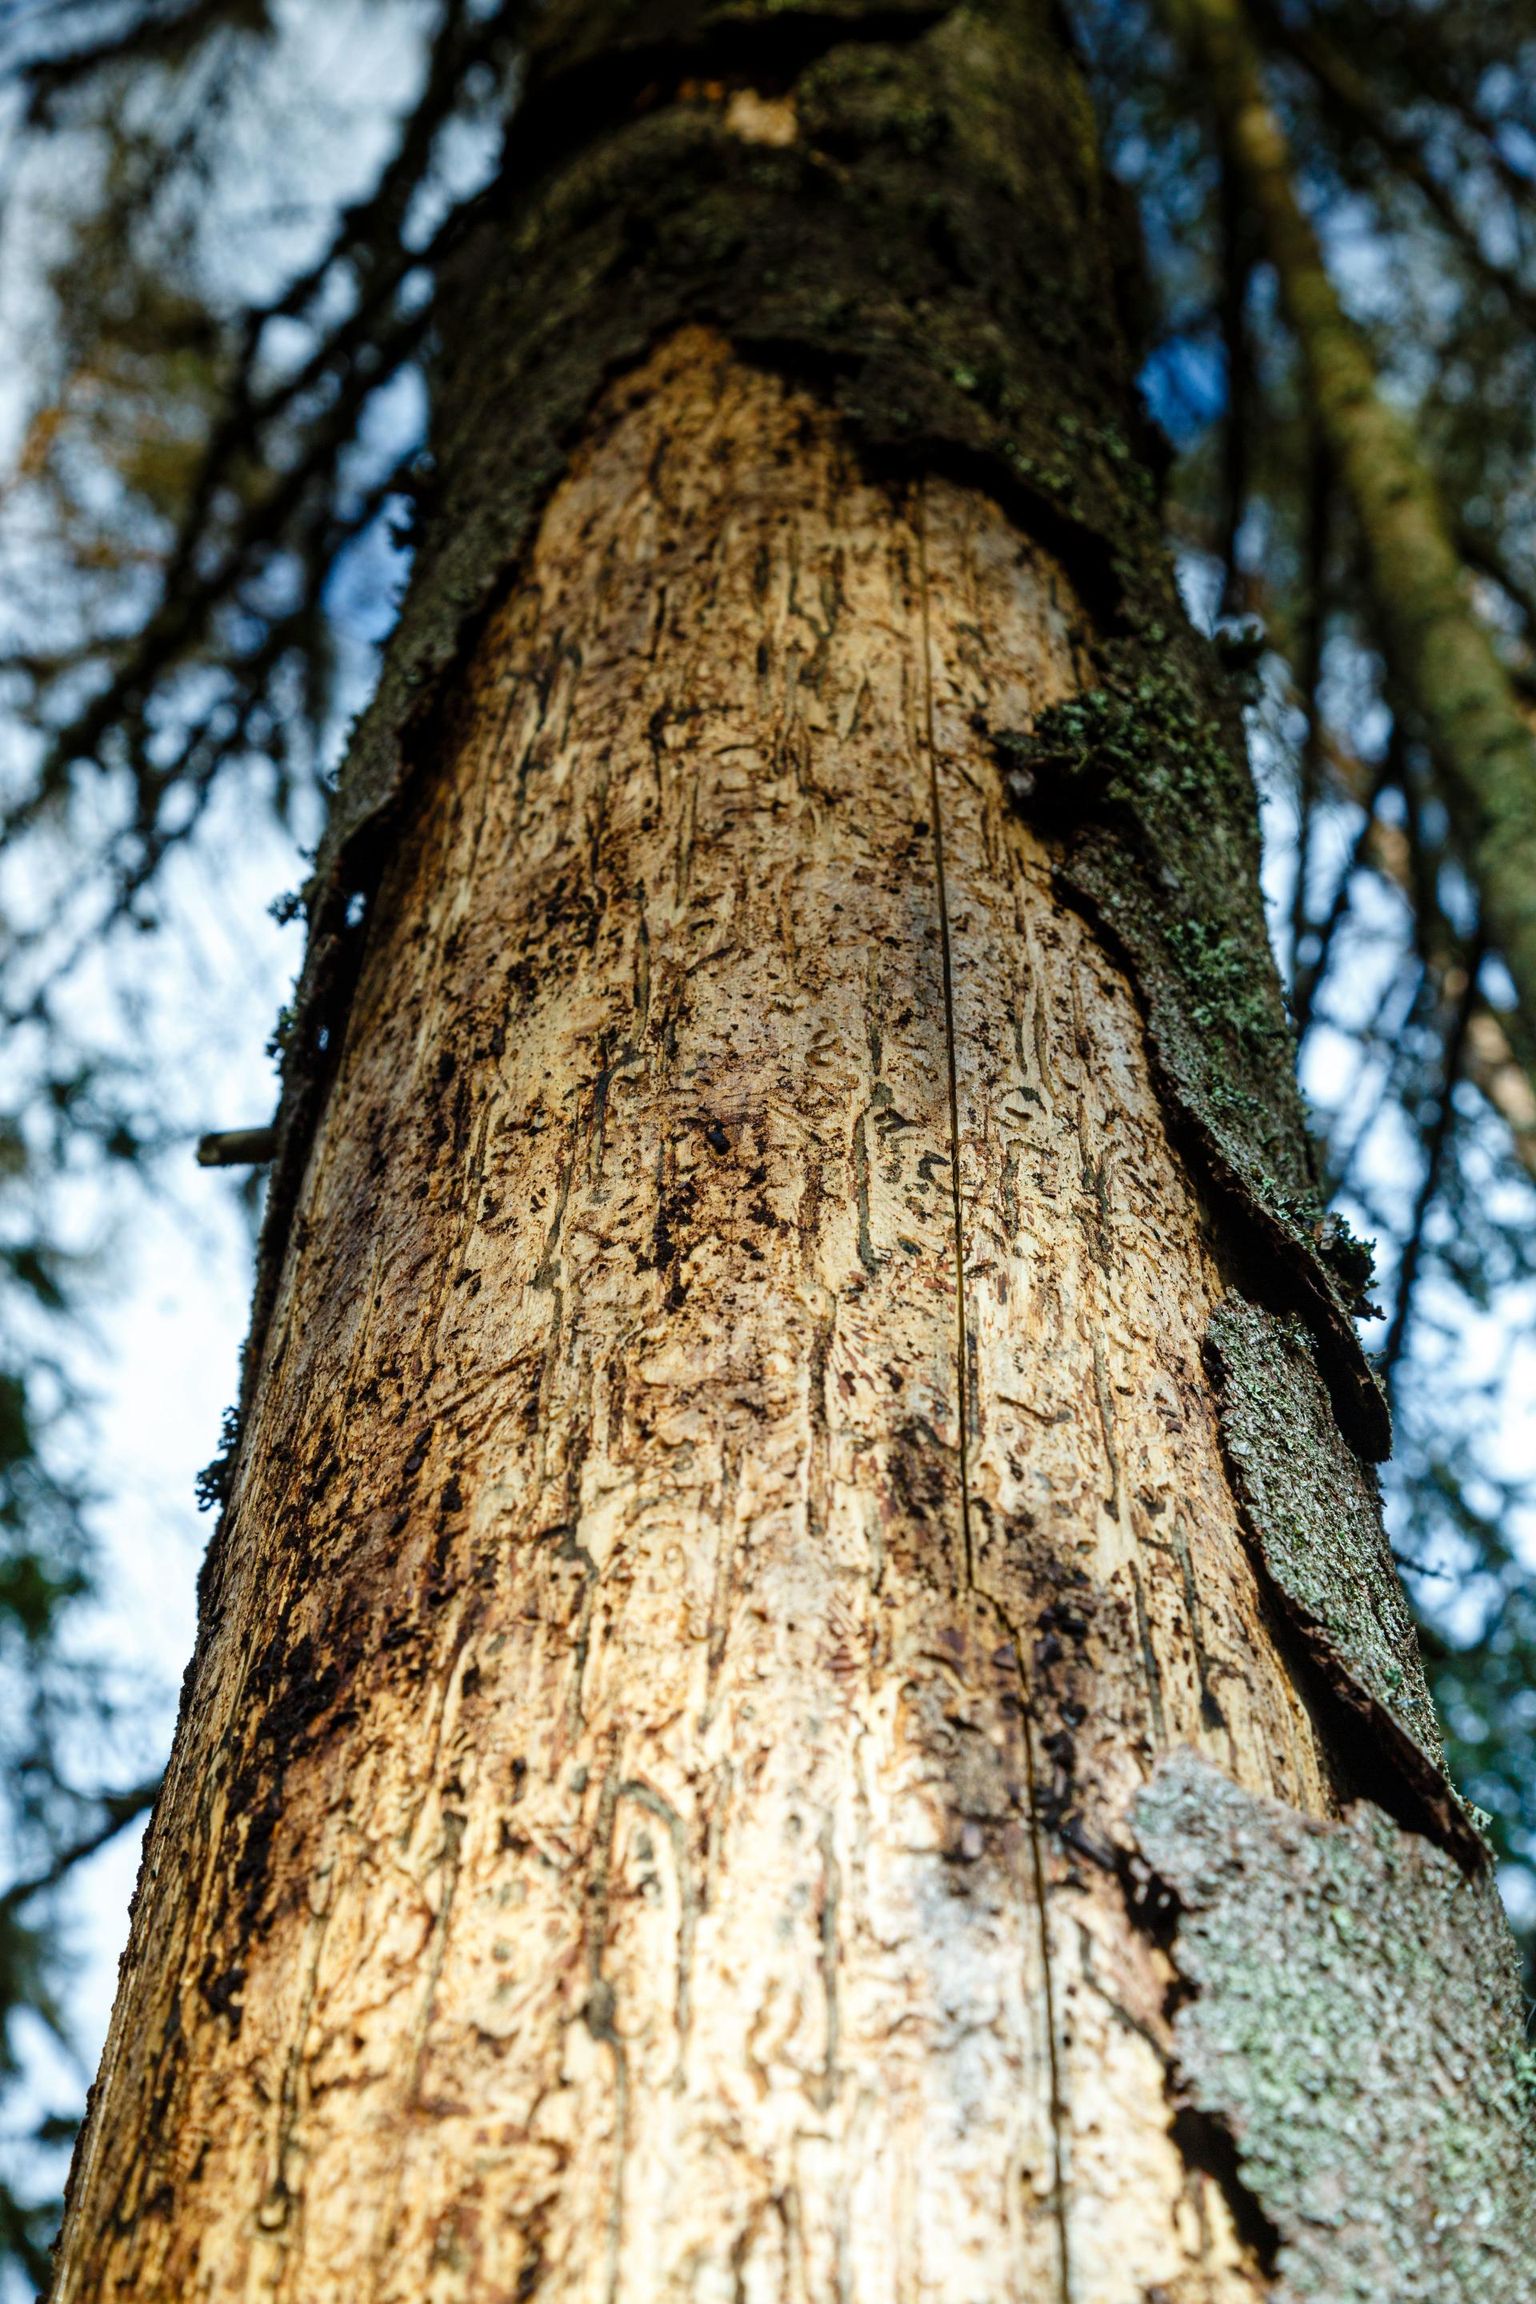 Kuuse-kooreürask on üks peamisi kuusekahjureid Euroopas. Elujõulistes puistutes pole teda palju, kuid tormi, tuule või põua kahjustatud metsas võib arvukus kasvada väga suureks.